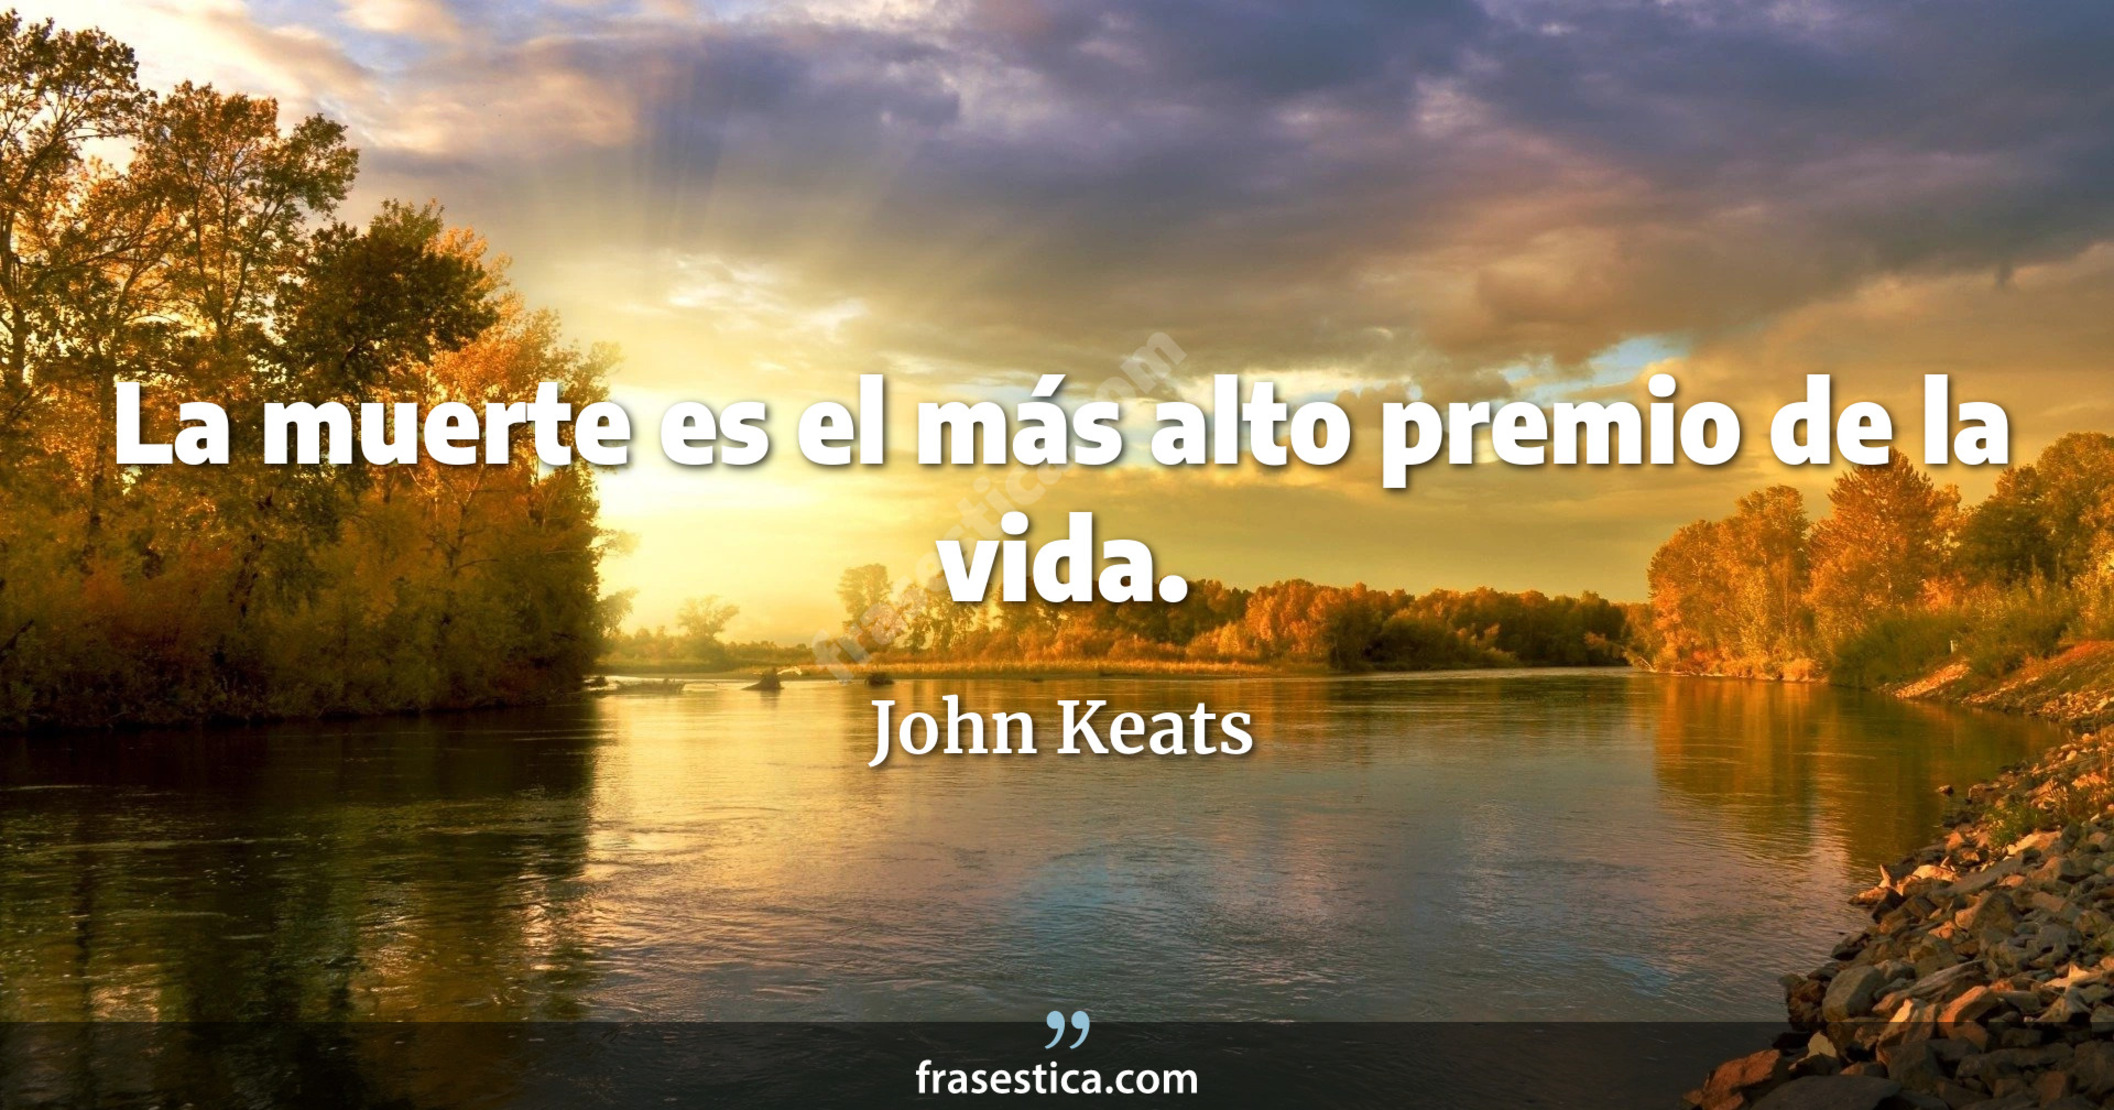 La muerte es el más alto premio de la vida. - John Keats